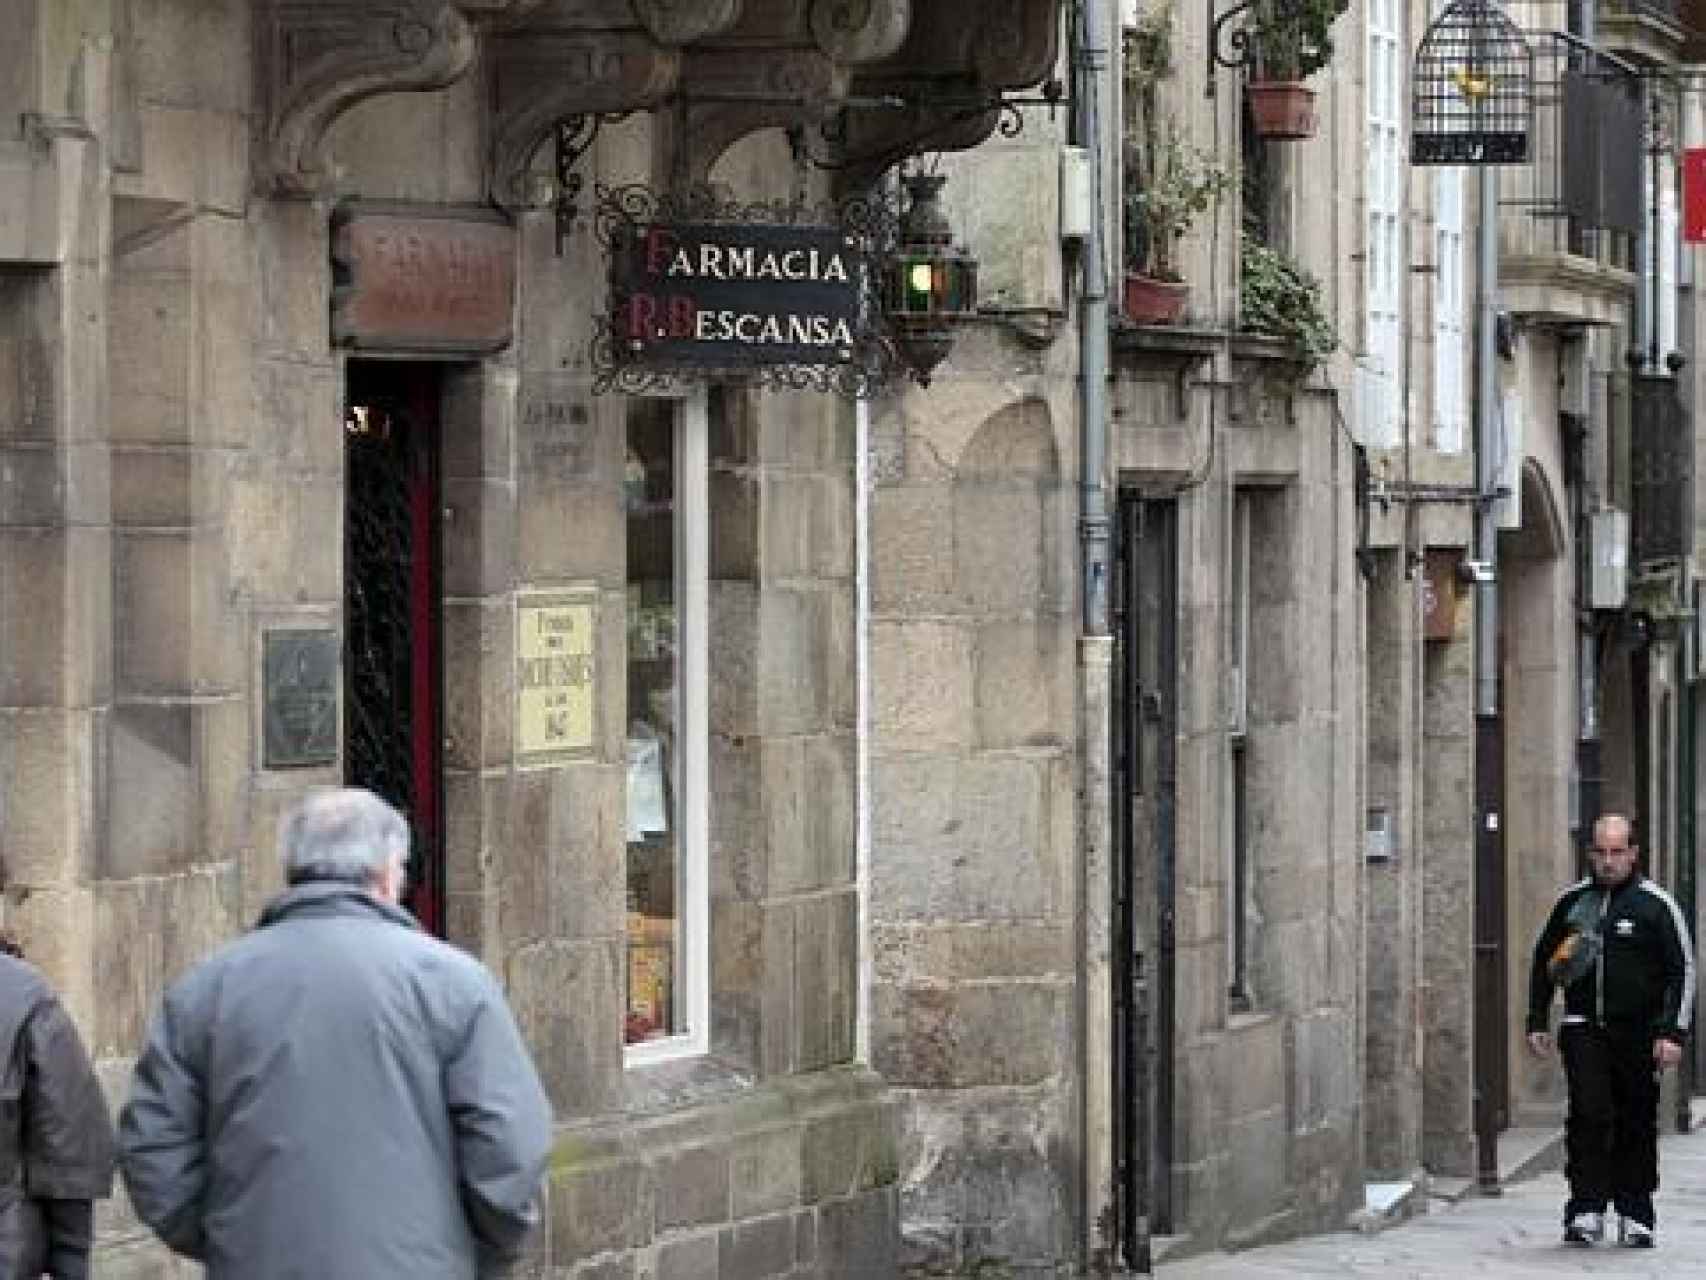 La farmacia de los Bescansa en el centro de Santiago